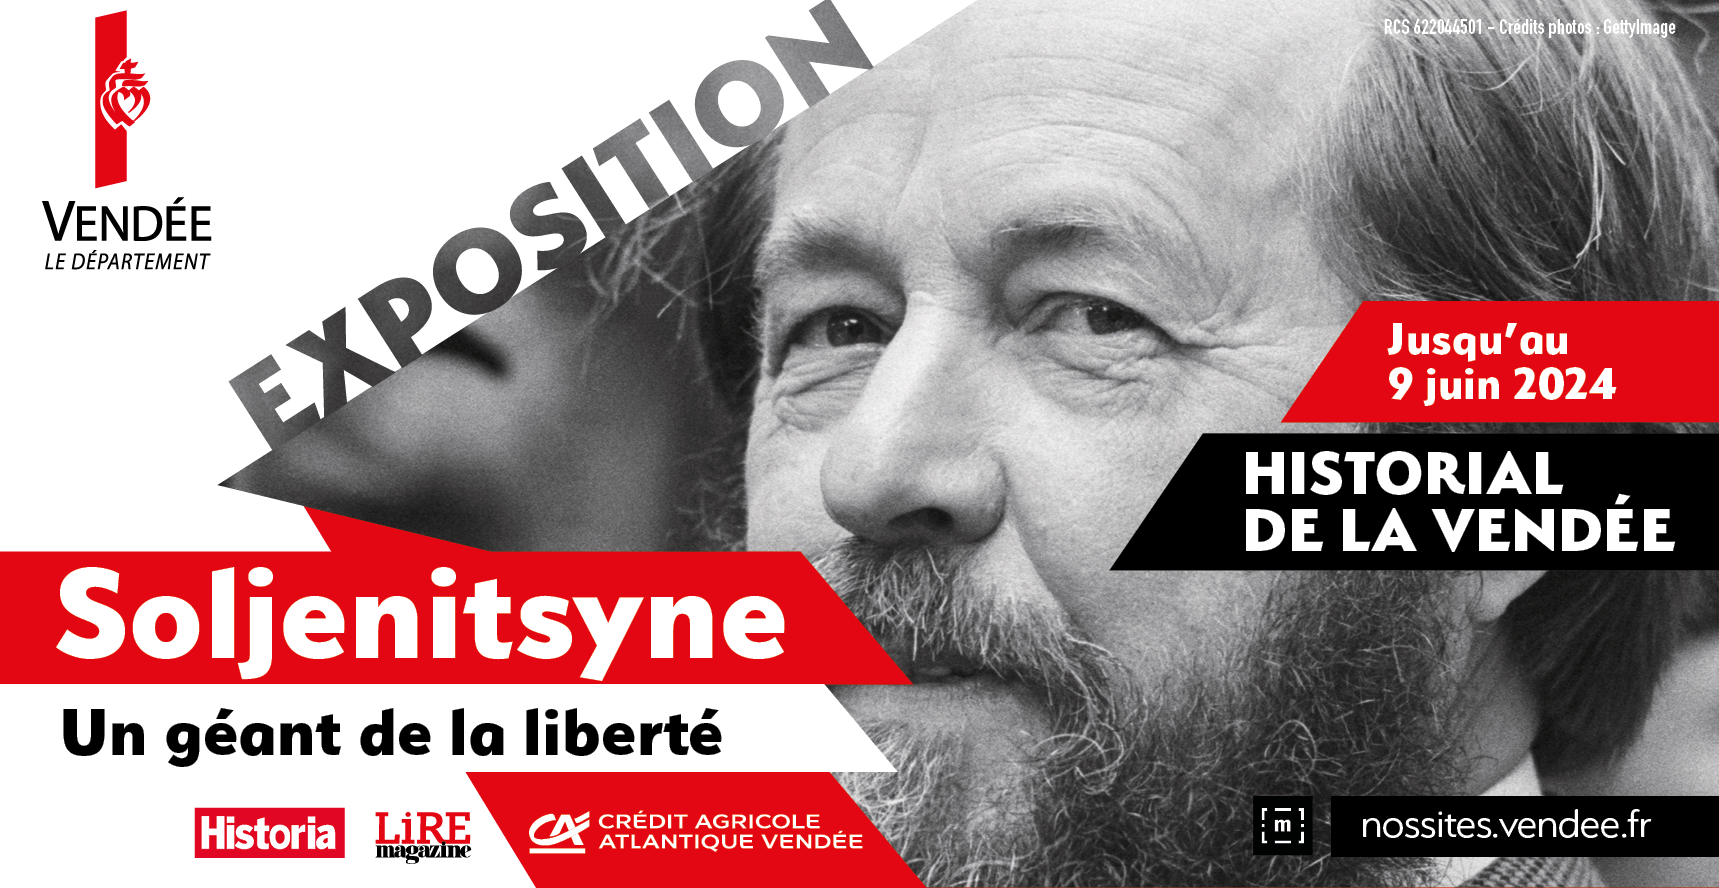 "Soljenitsyne, un géant de la liberté", exposition événement à l'Historial de la Vendée